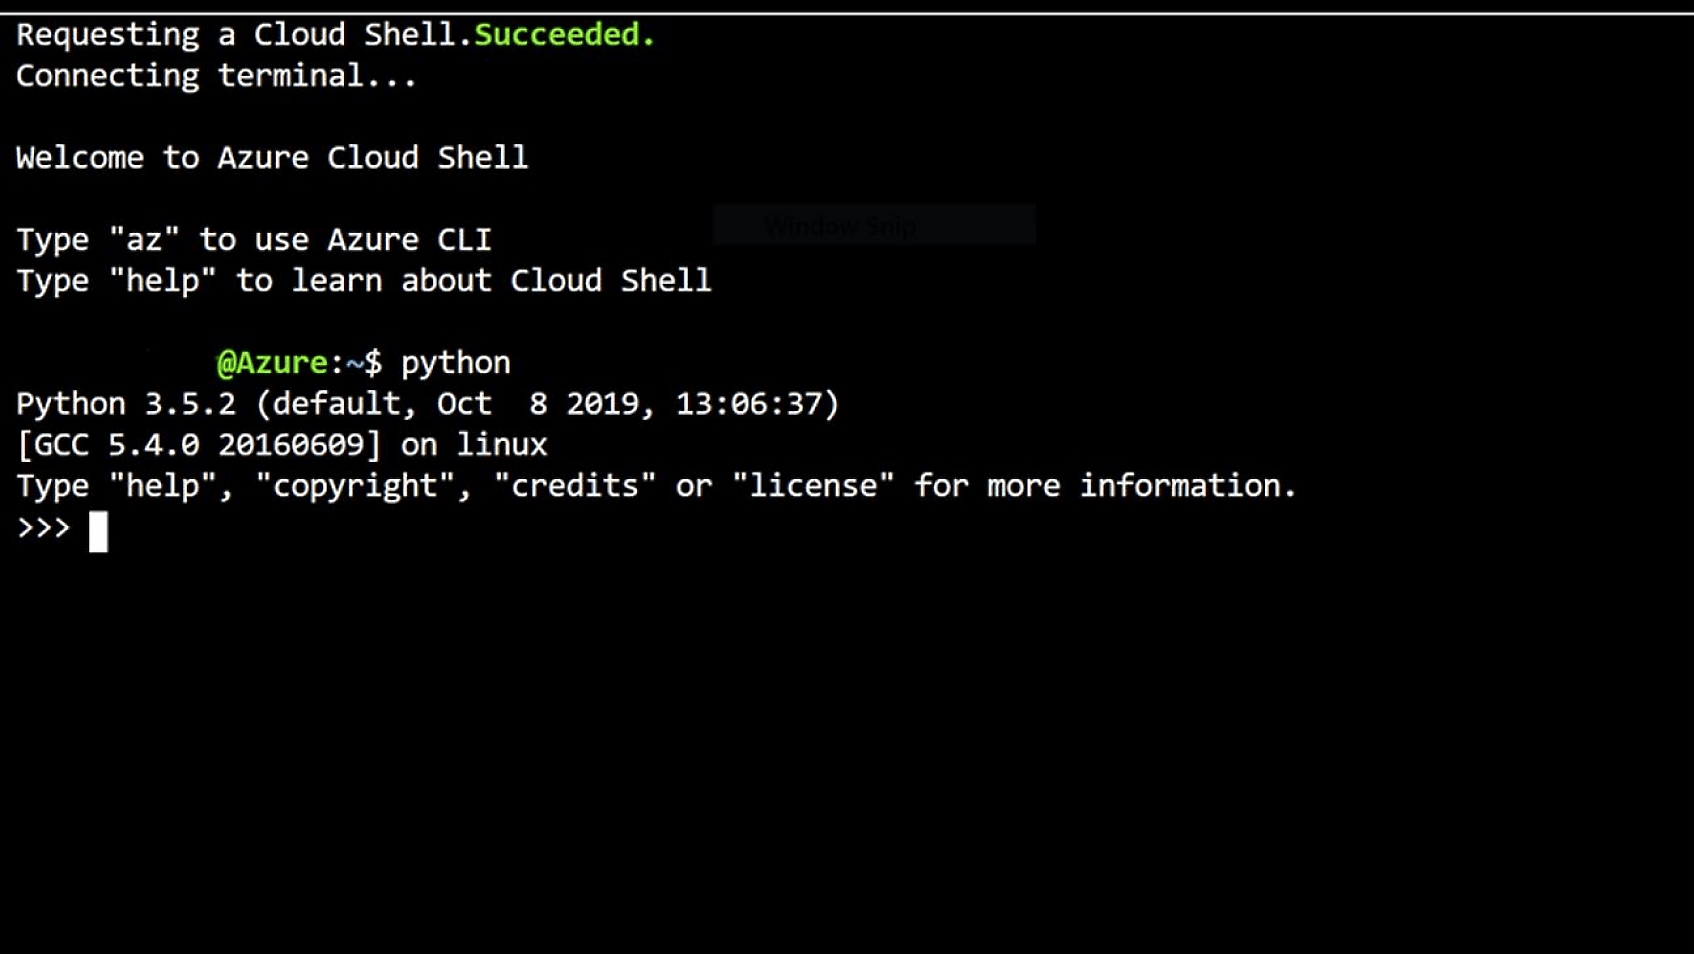 Menyambungkan ke terminal Azure Cloud Shell dan pesan penyambutan yang menyertai.